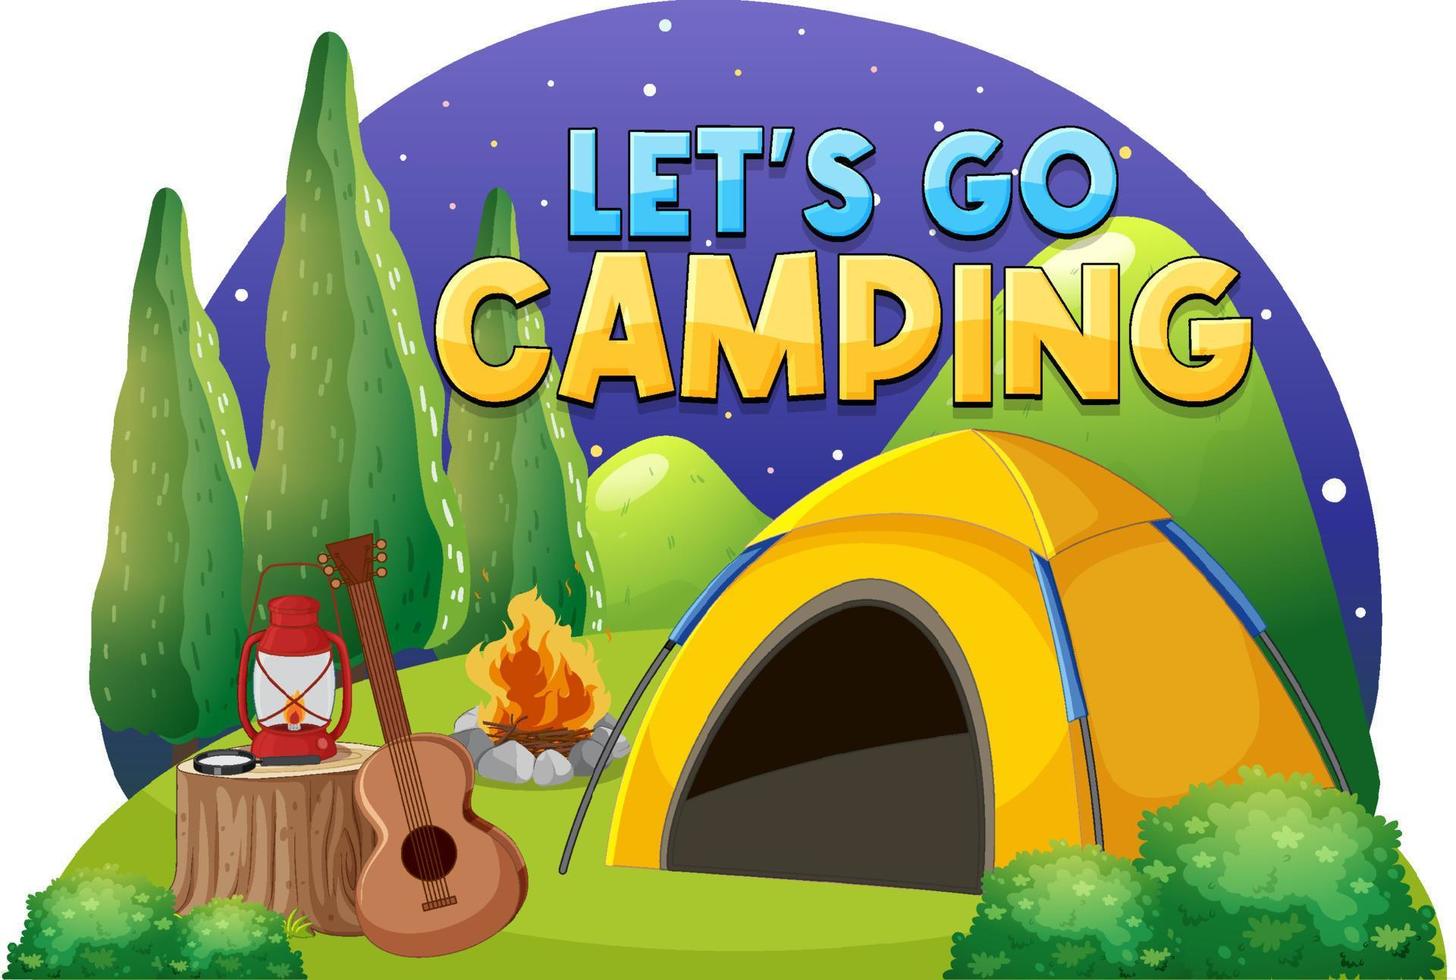 camping tält med låter gå camping text vektor